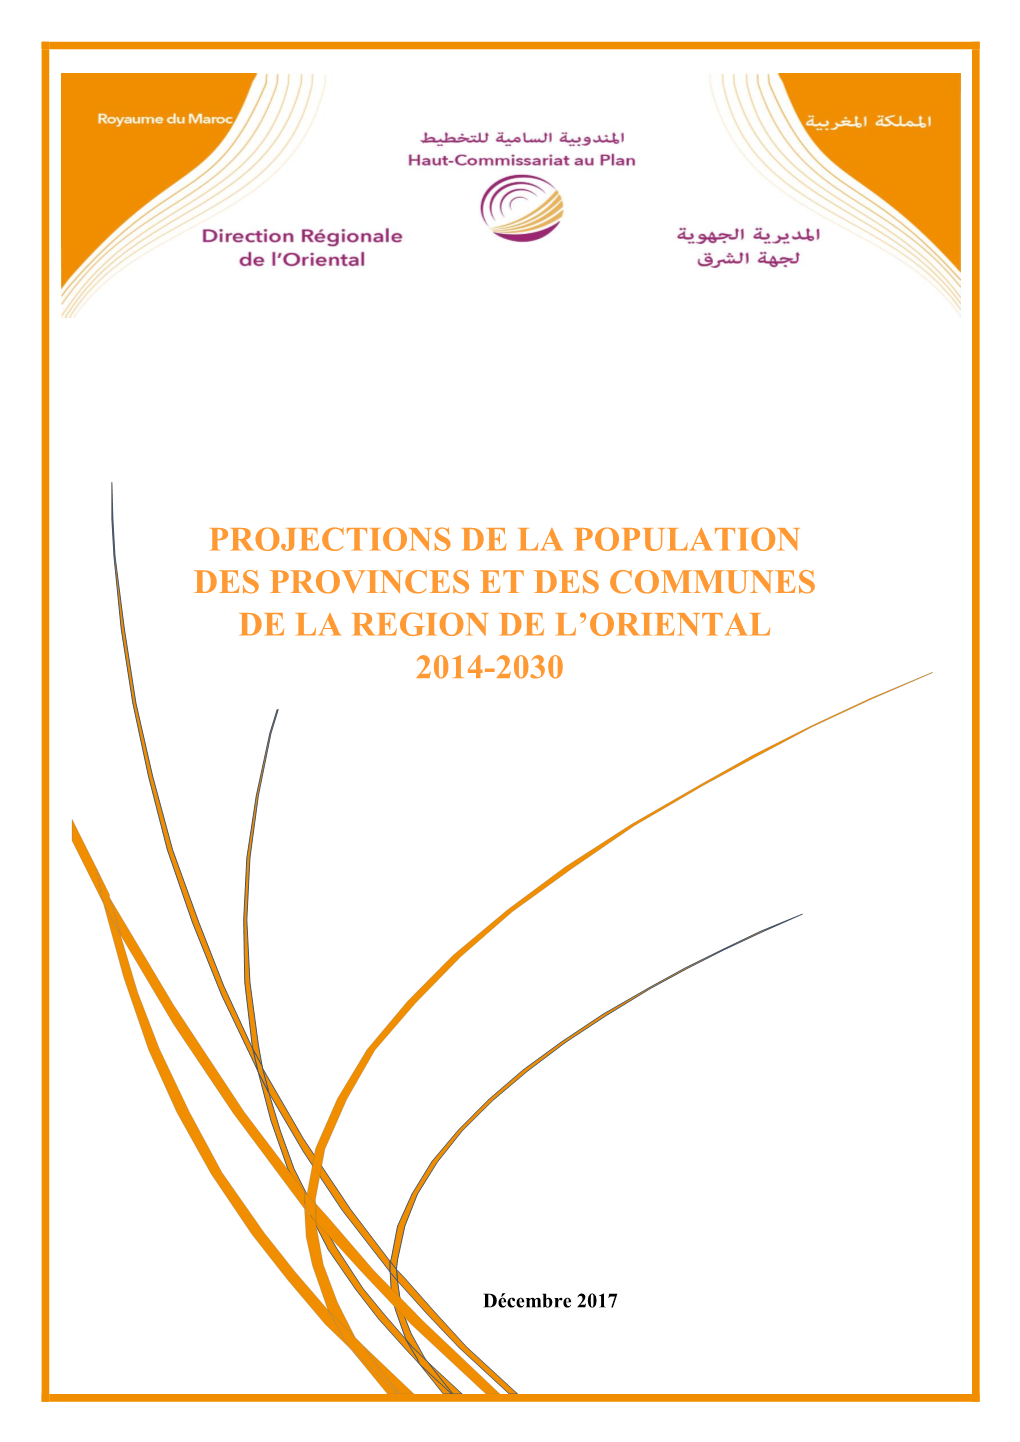 Projections De La Population Des Provinces Et Des Communes De La Region De L’Oriental 2014-2030